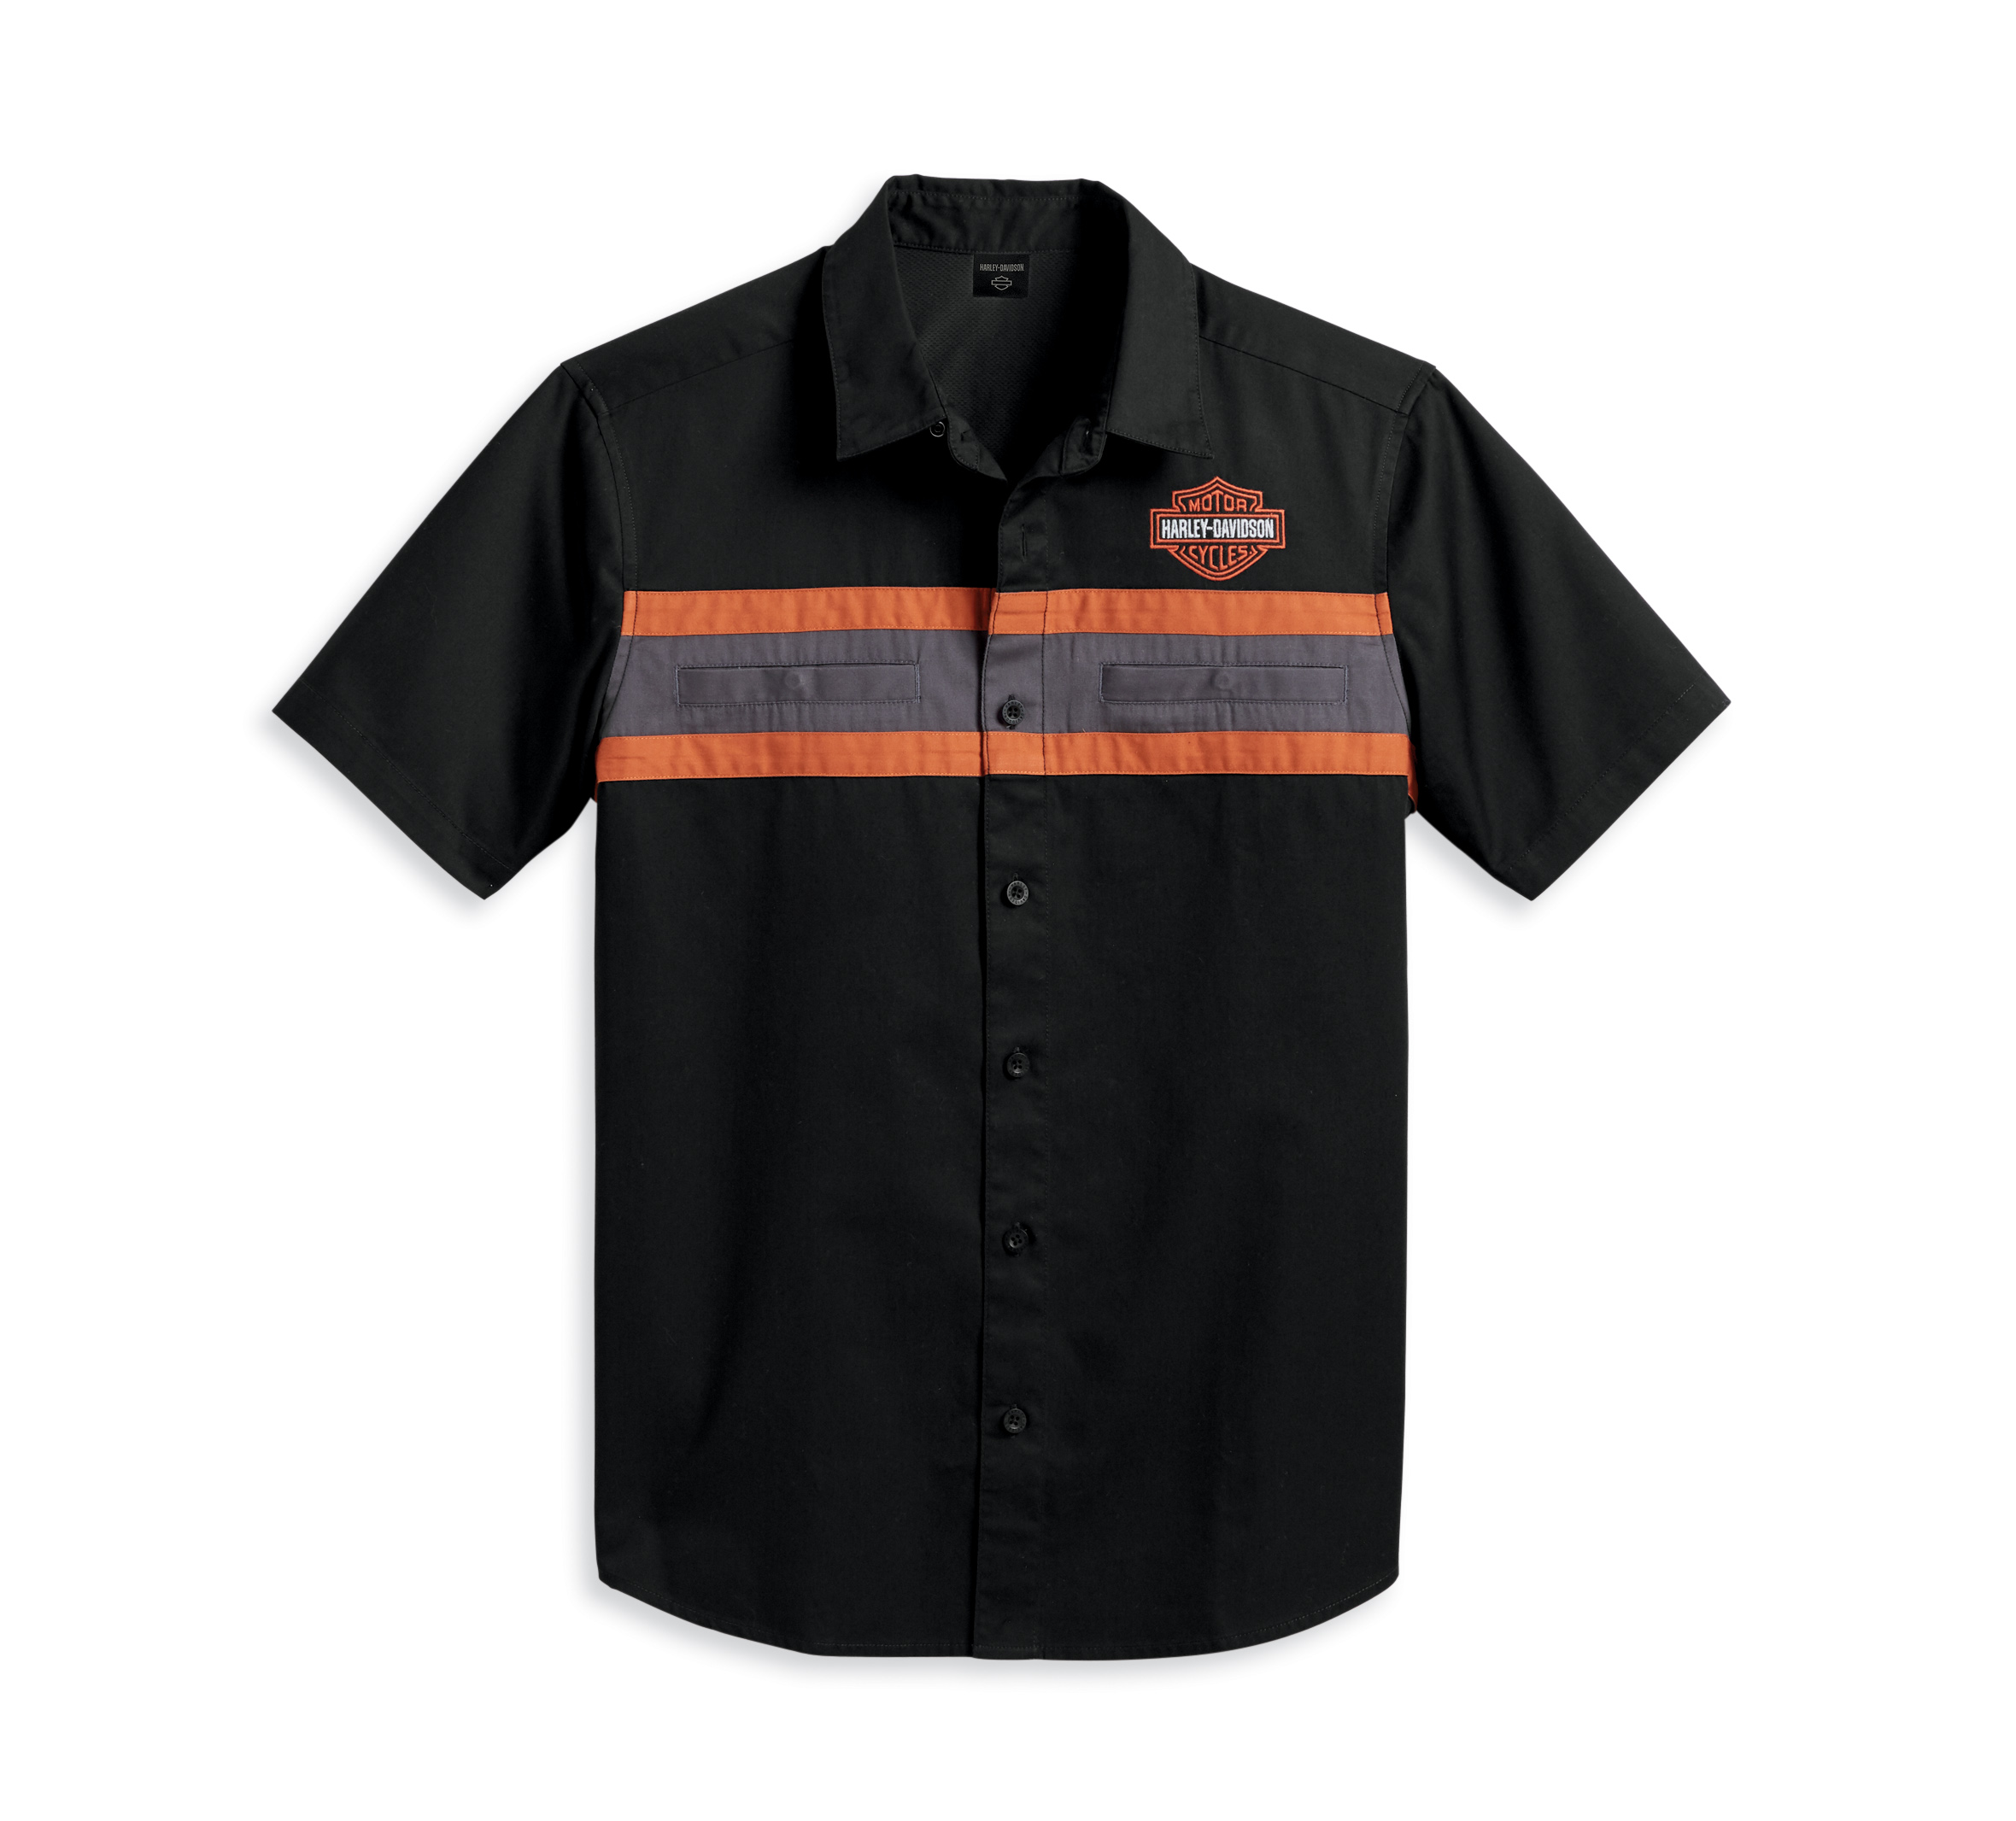 Men's Harley Performance Shirt | Harley-Davidson APAC